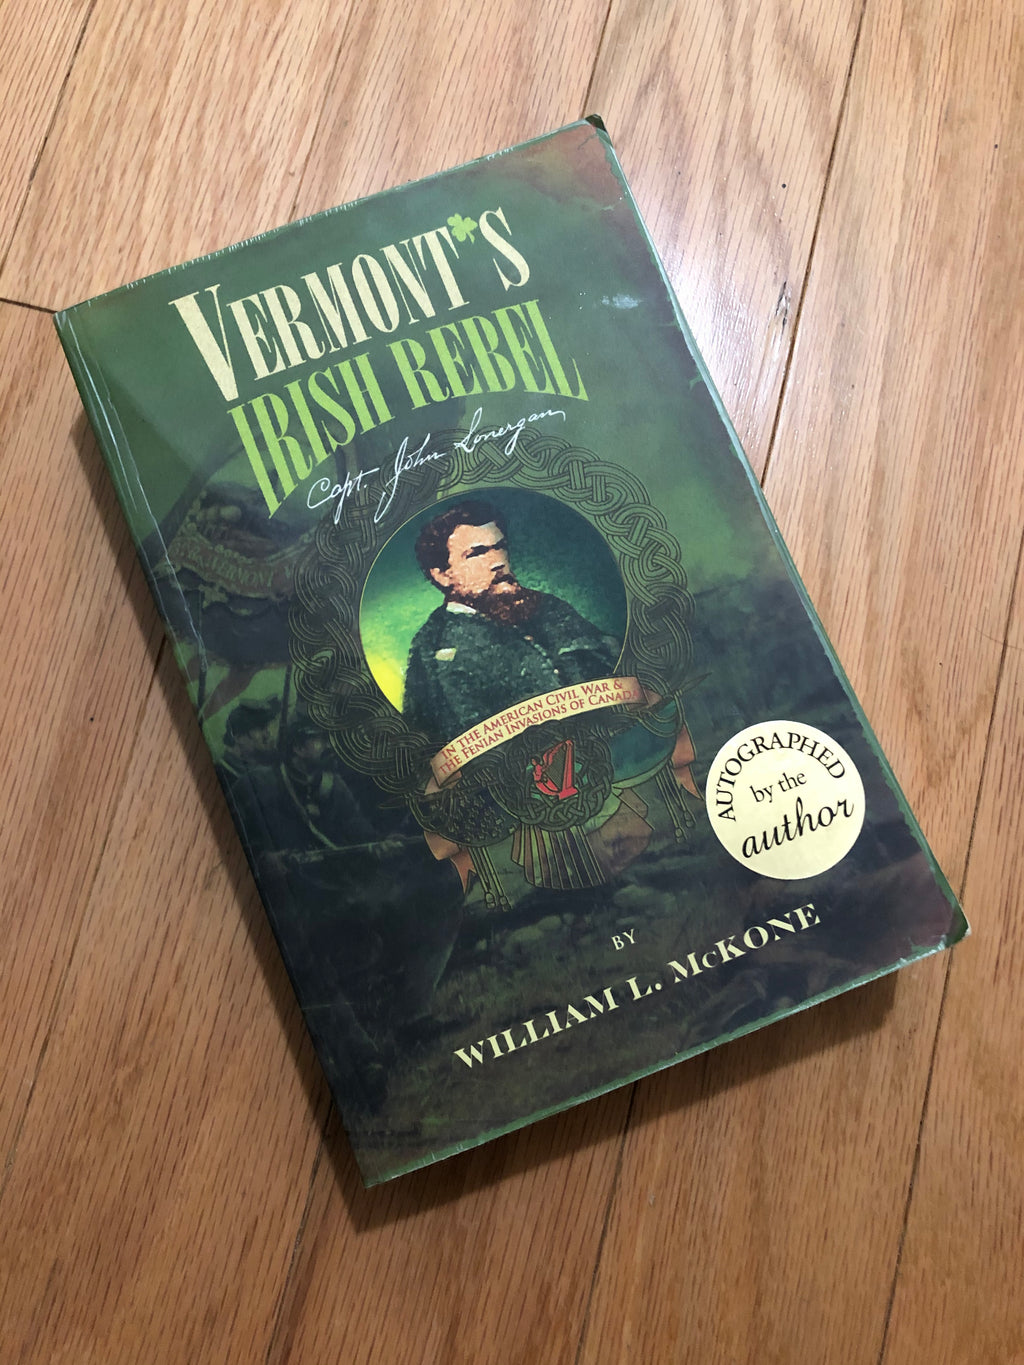 Vermont's Irish Rebel- By William L. McKone